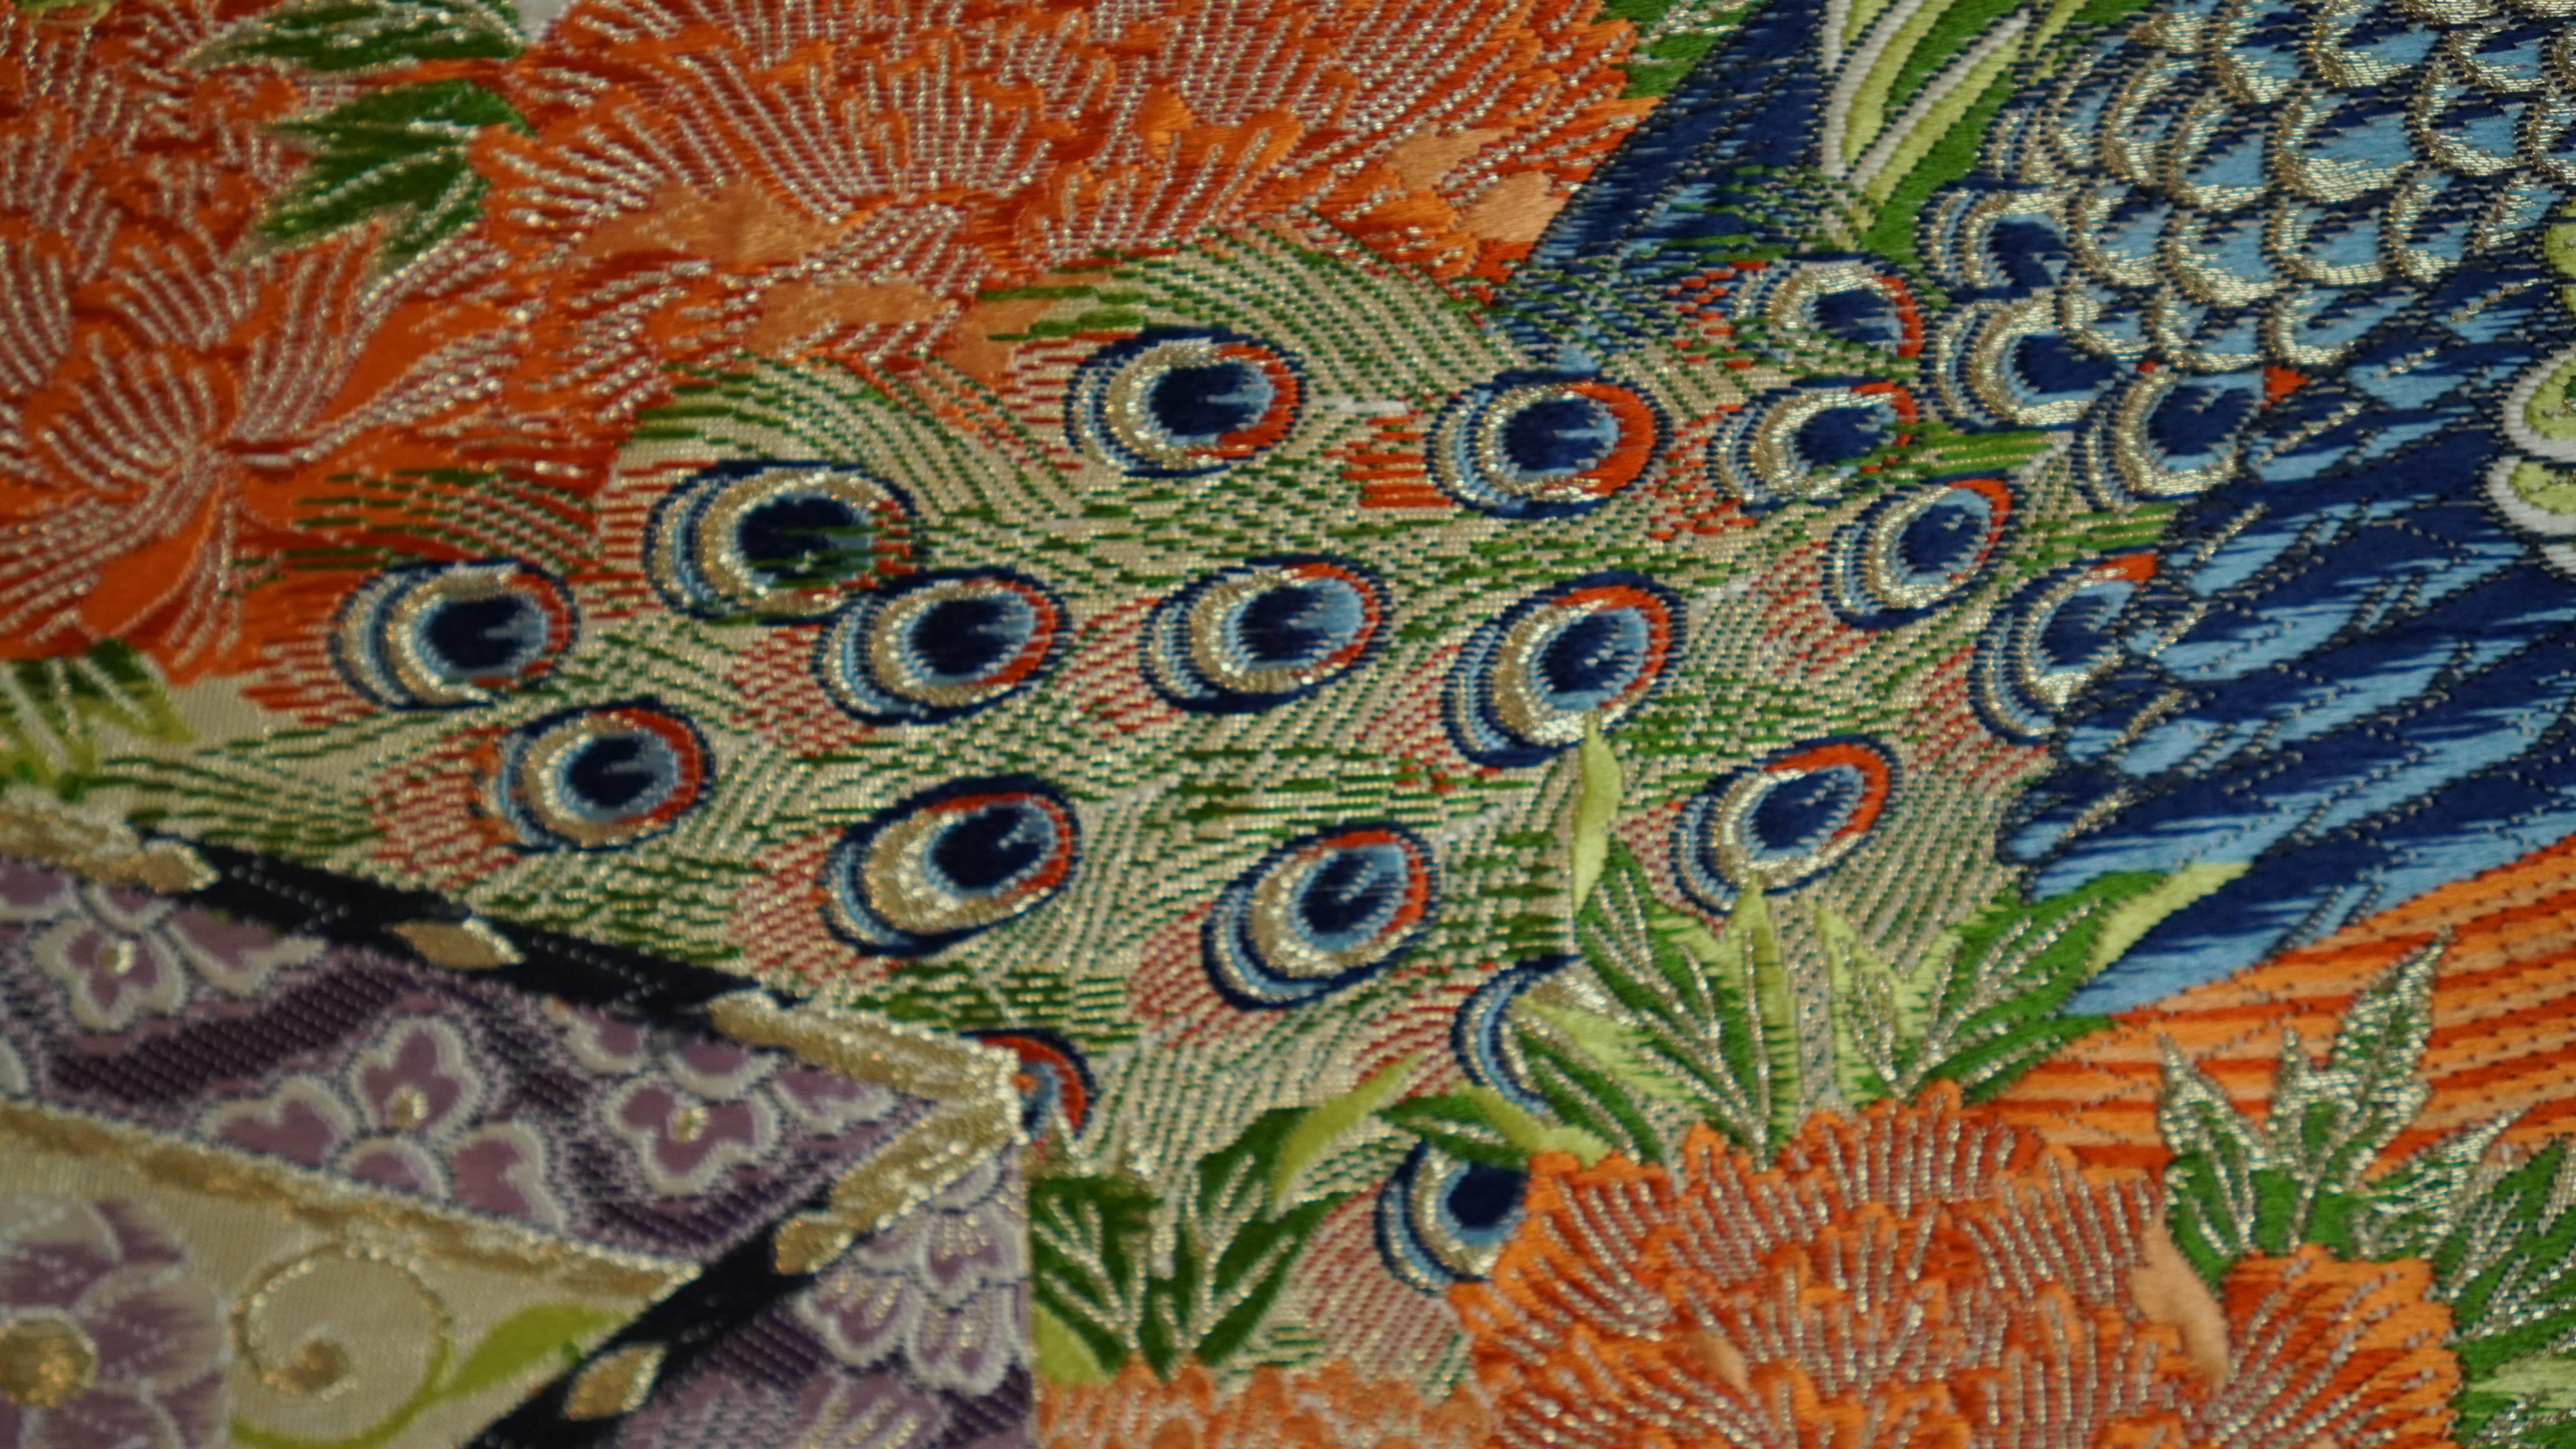  Japanese Art / Kimono Art / Tapestry, the King of Peacocks For Sale 1